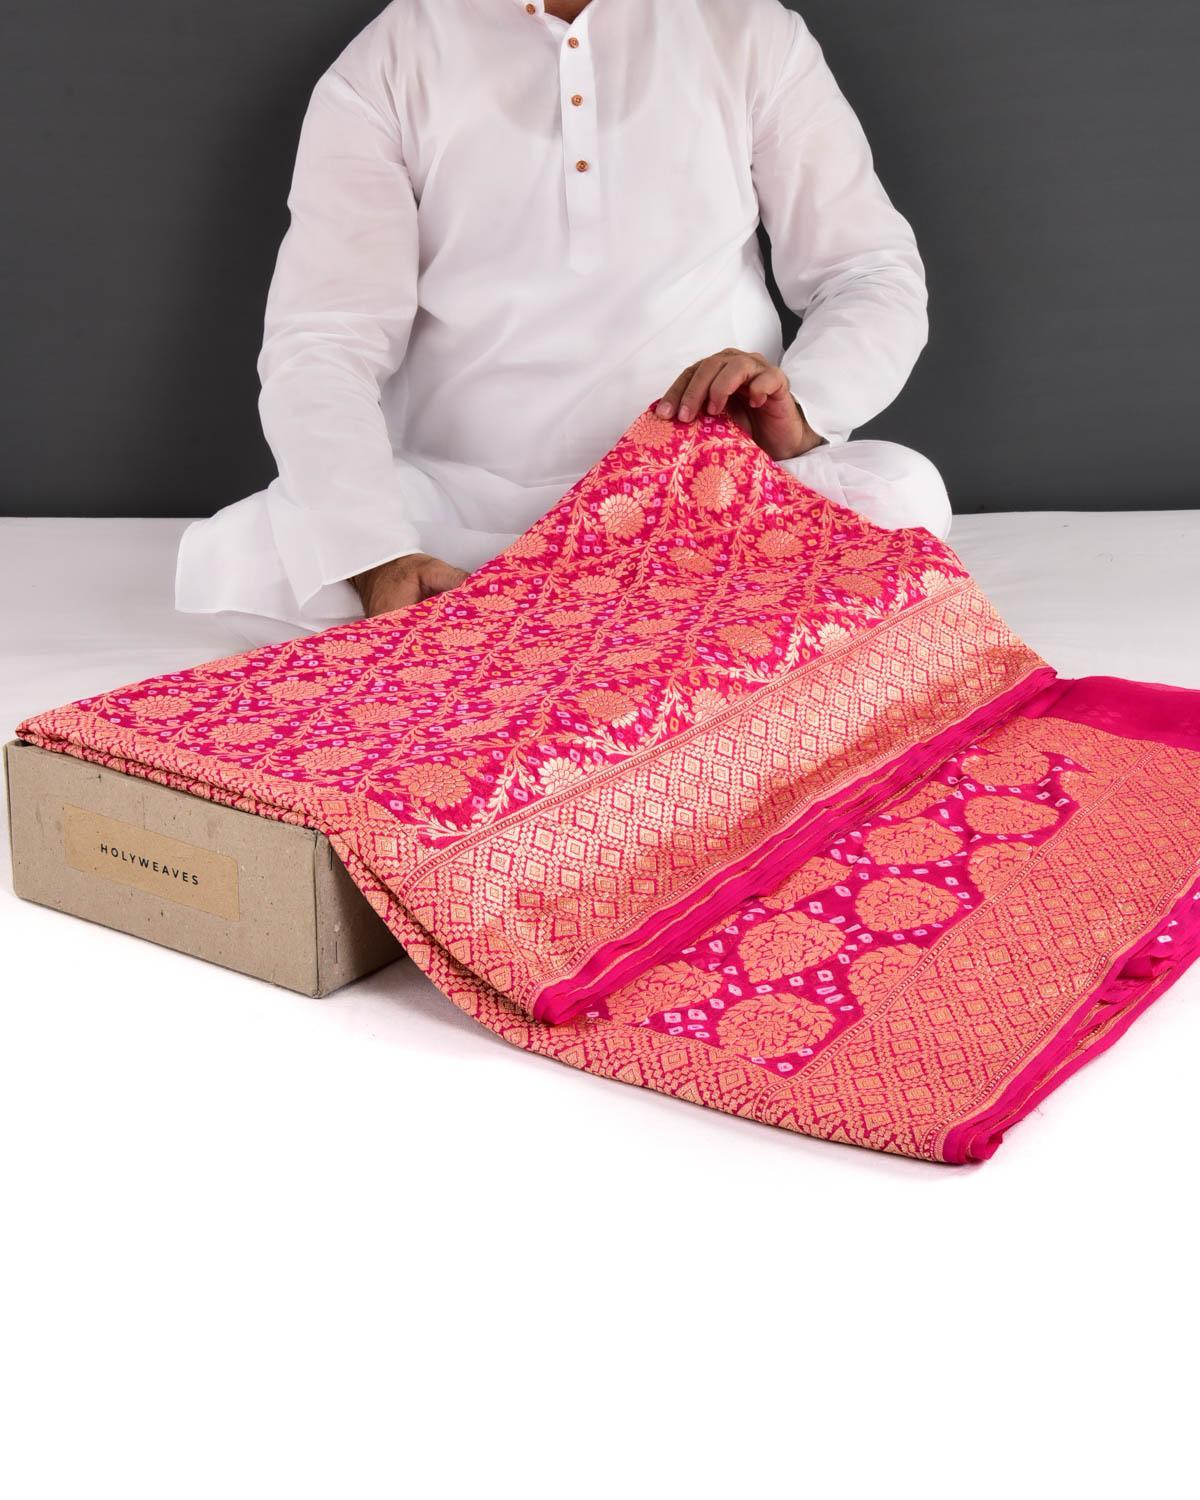 Rani Pink Banarasi Cutwork Brocade Handwoven Khaddi Georgette Saree with White & Yellow Bandhej - By HolyWeaves, Benares